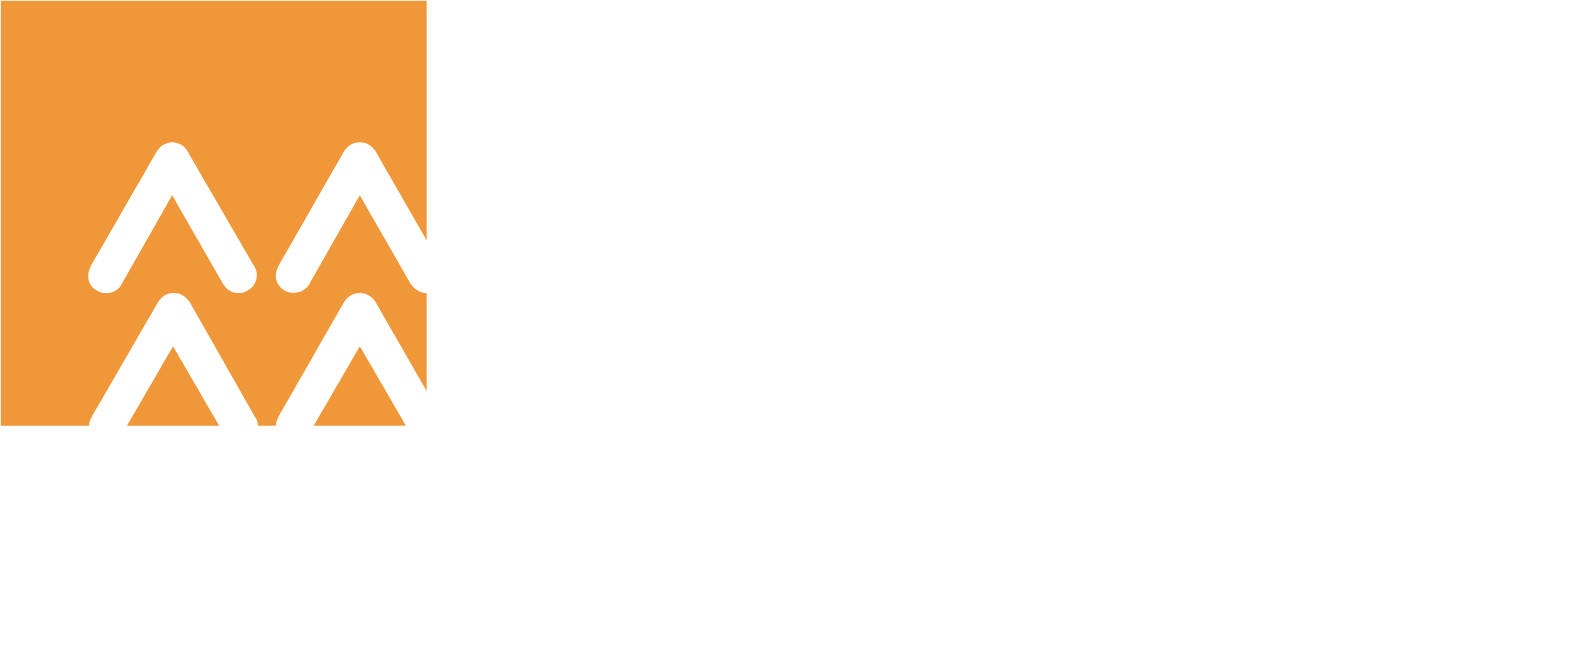 China Resources Land Logo groß für dunkle Hintergründe (transparentes PNG)